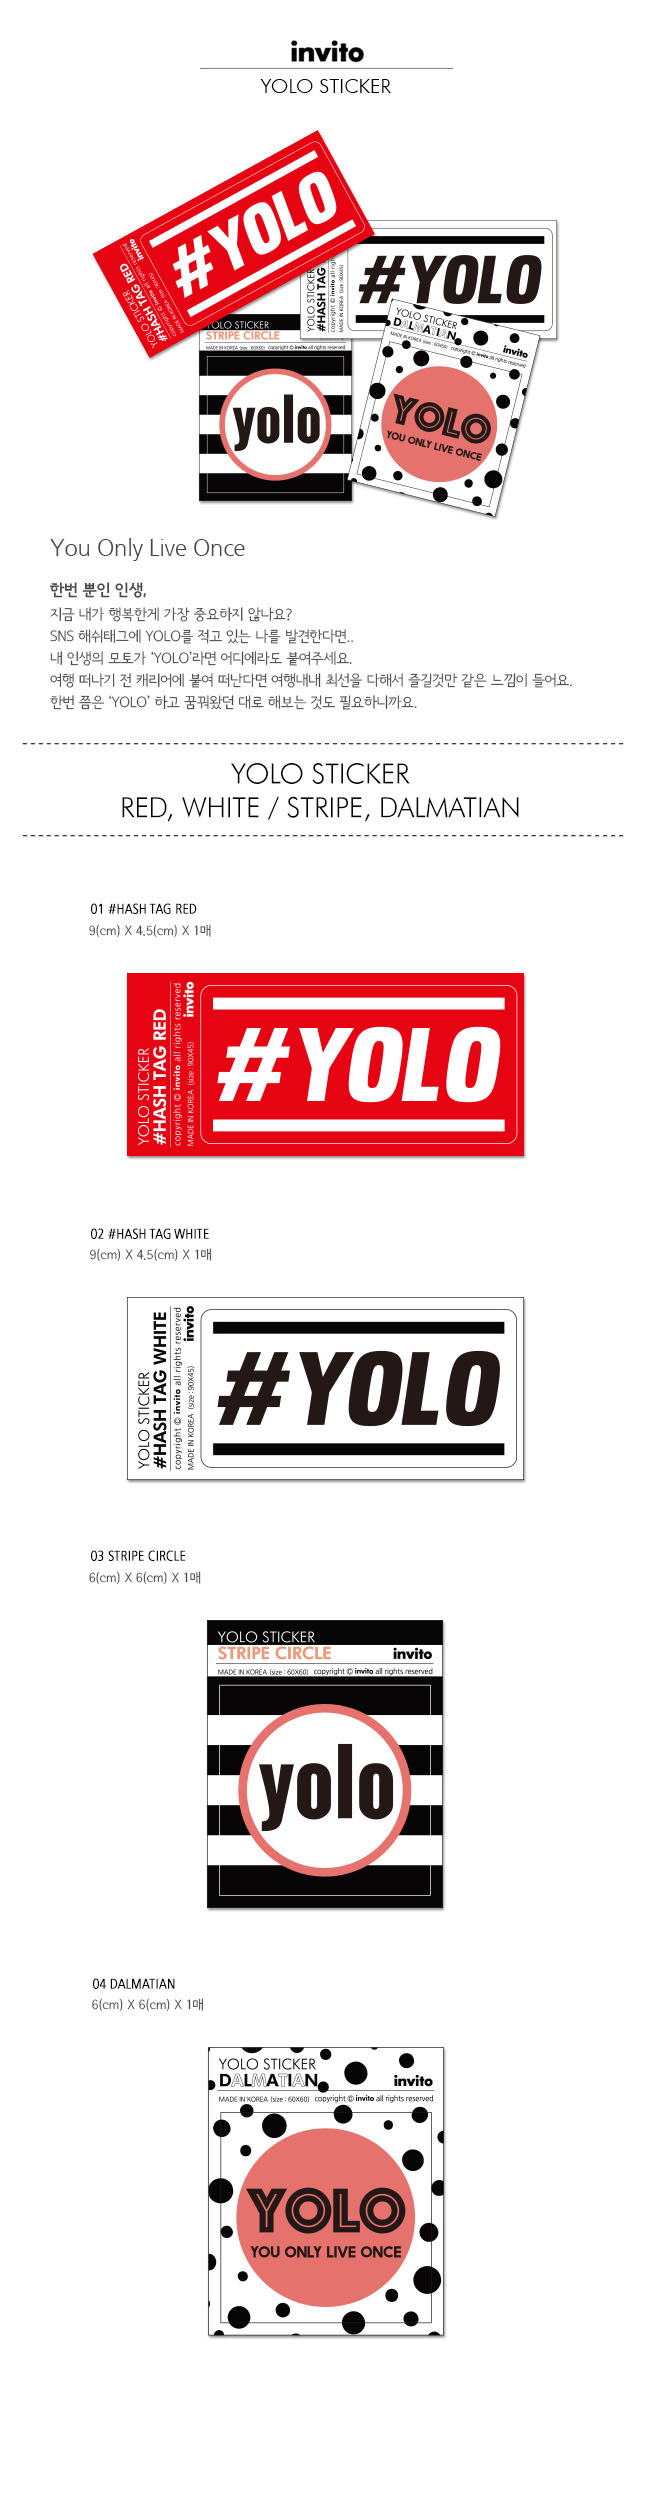 YOLO sticker 욜로 스티커 800원 - 인비토 디자인문구, 데코레이션, 스티커, 디자인스티커 바보사랑 YOLO sticker 욜로 스티커 800원 - 인비토 디자인문구, 데코레이션, 스티커, 디자인스티커 바보사랑